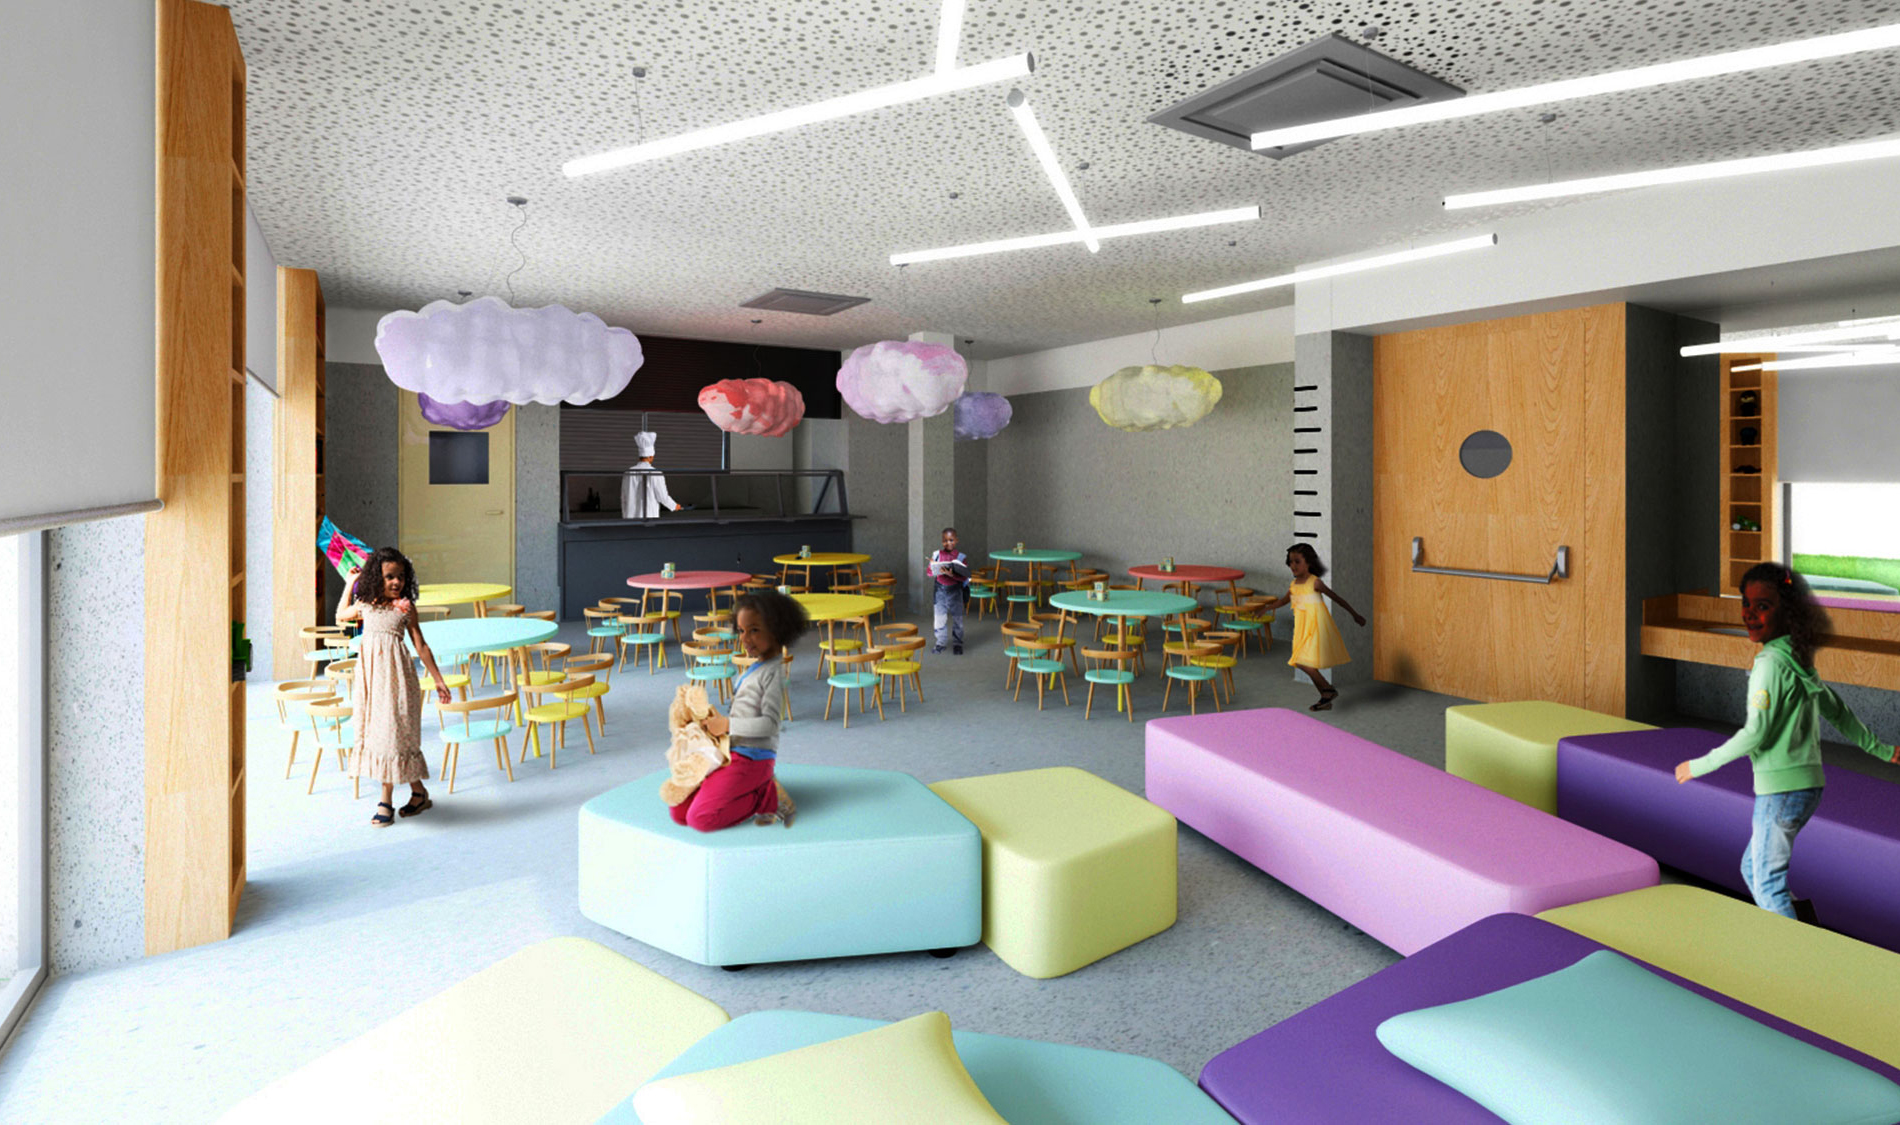 Aprender a brincar através da arquitetura da escola. Sala polivalente com mobiliário e iluminação colorido. Colégio Aldancas projeto Obra Atelier